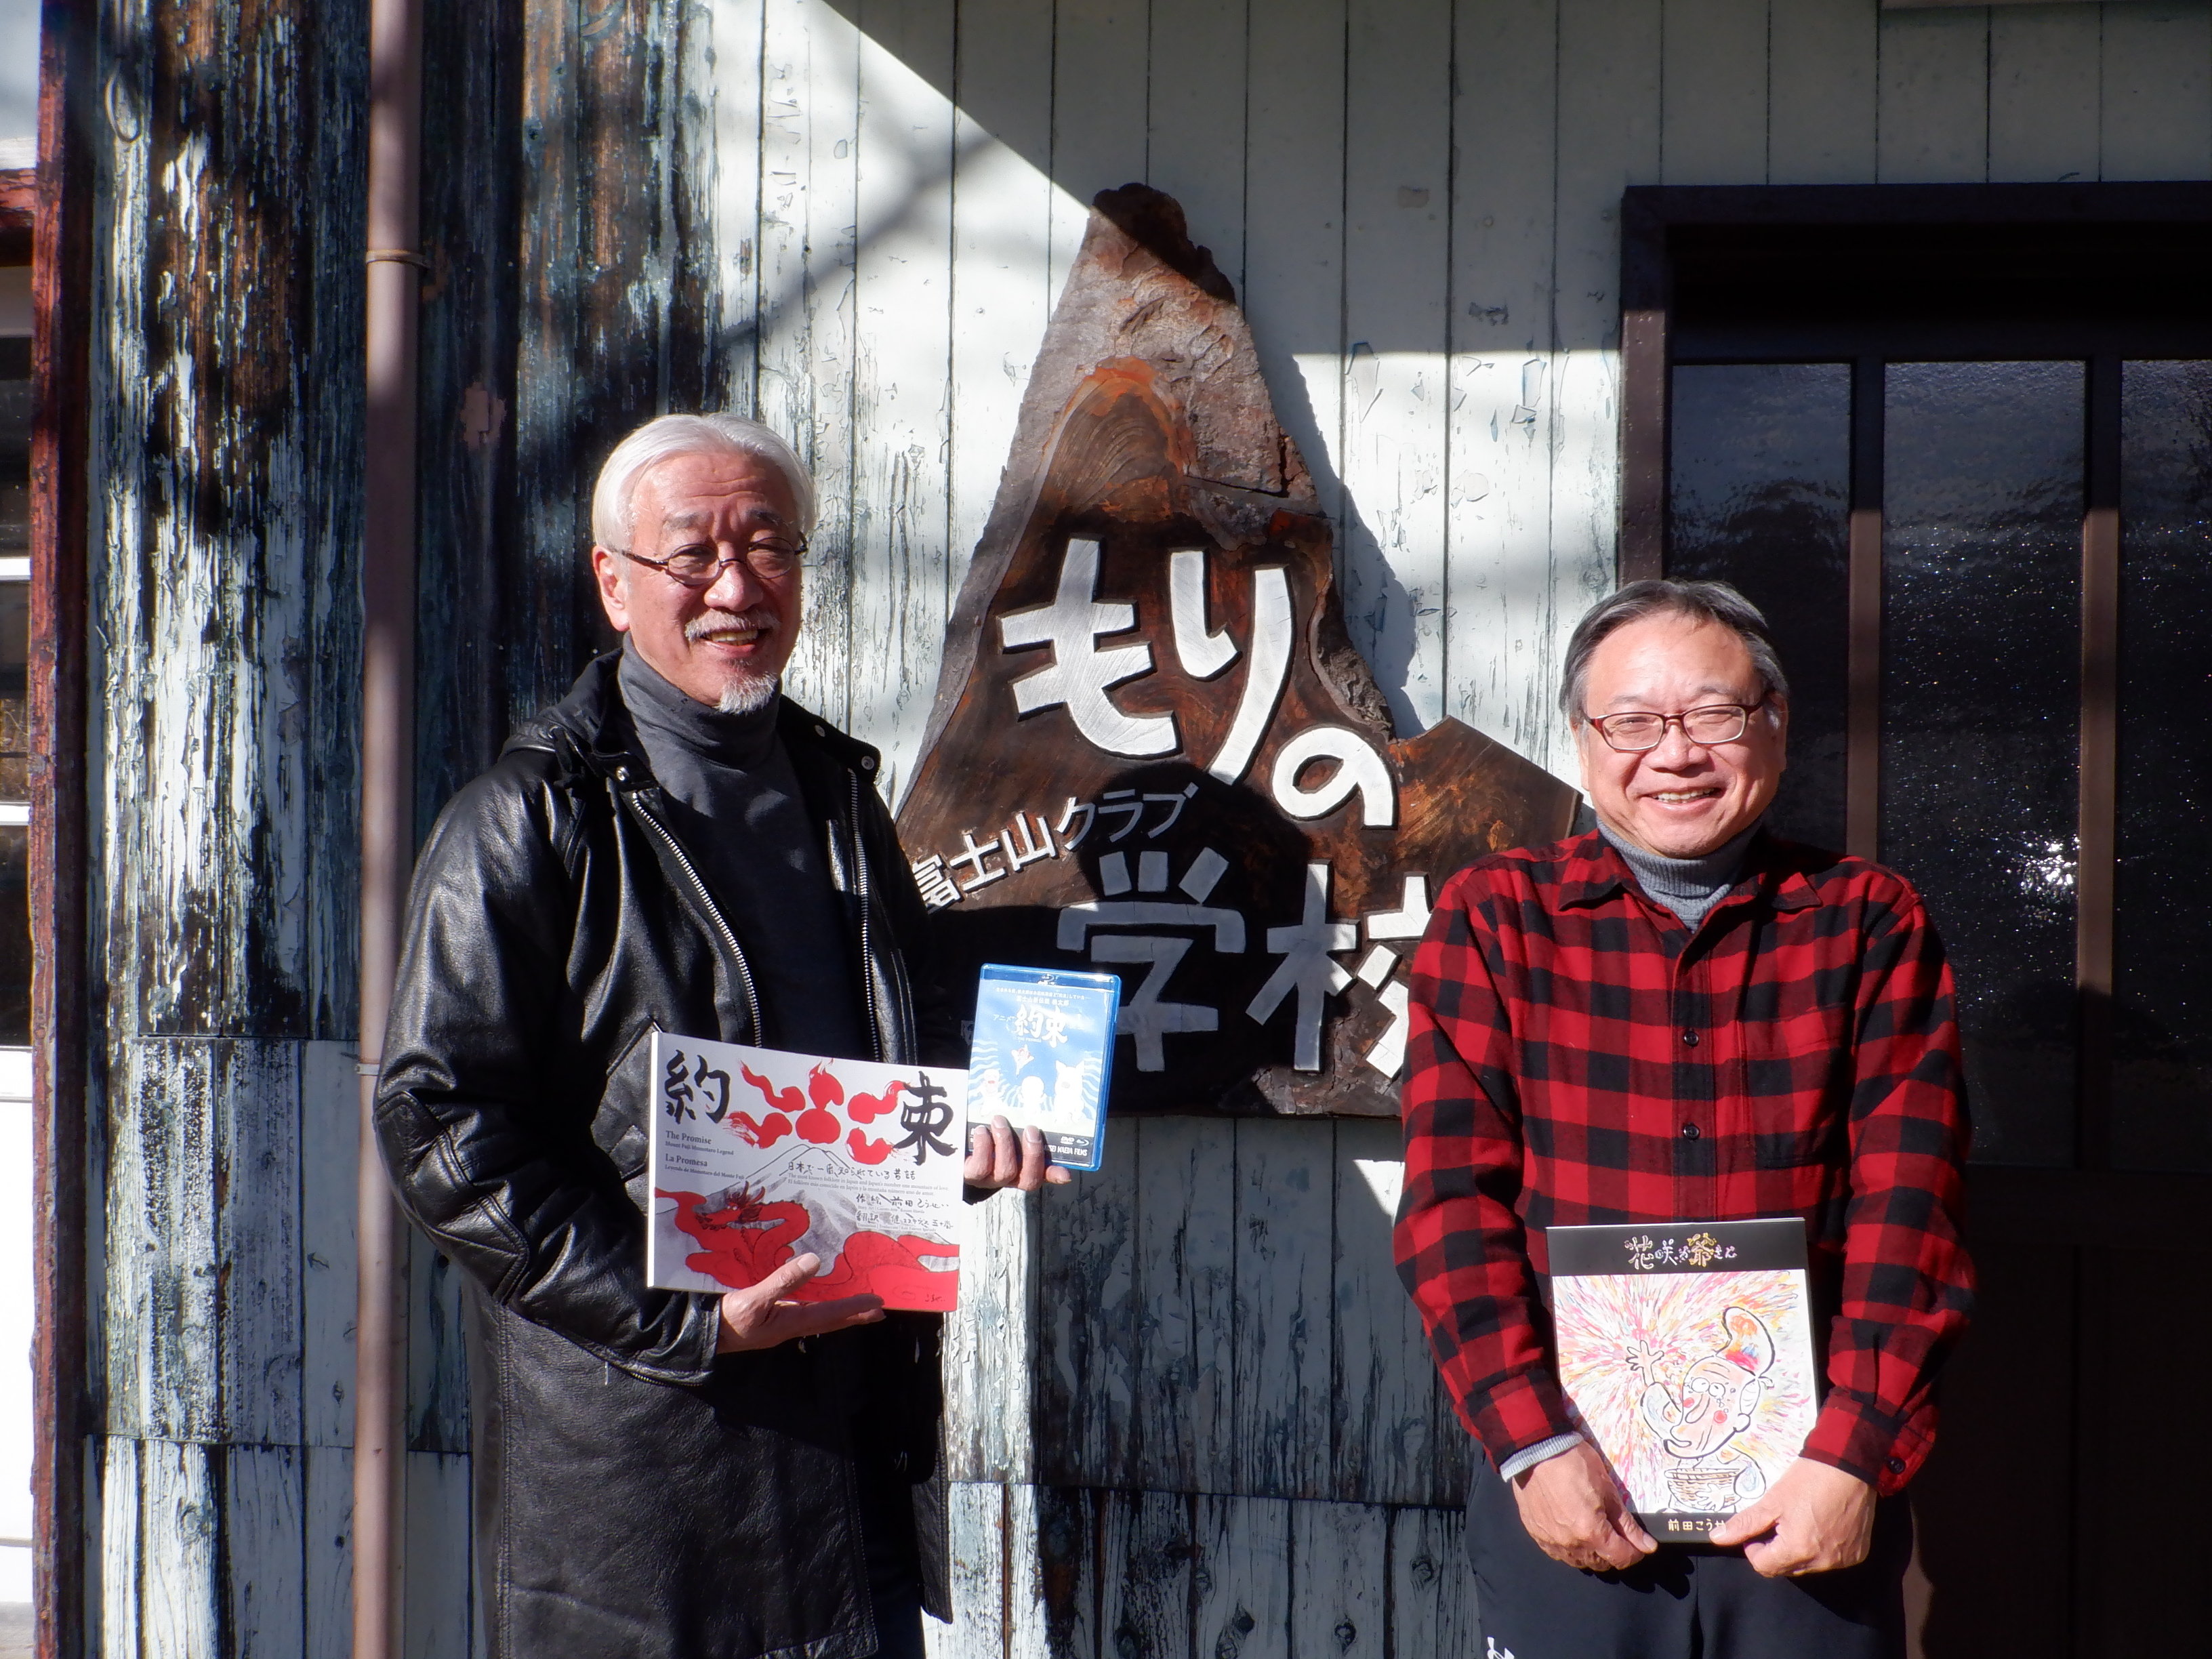 まんが日本むかし話の原作者、前田こうせいさんが当クラブを訪問